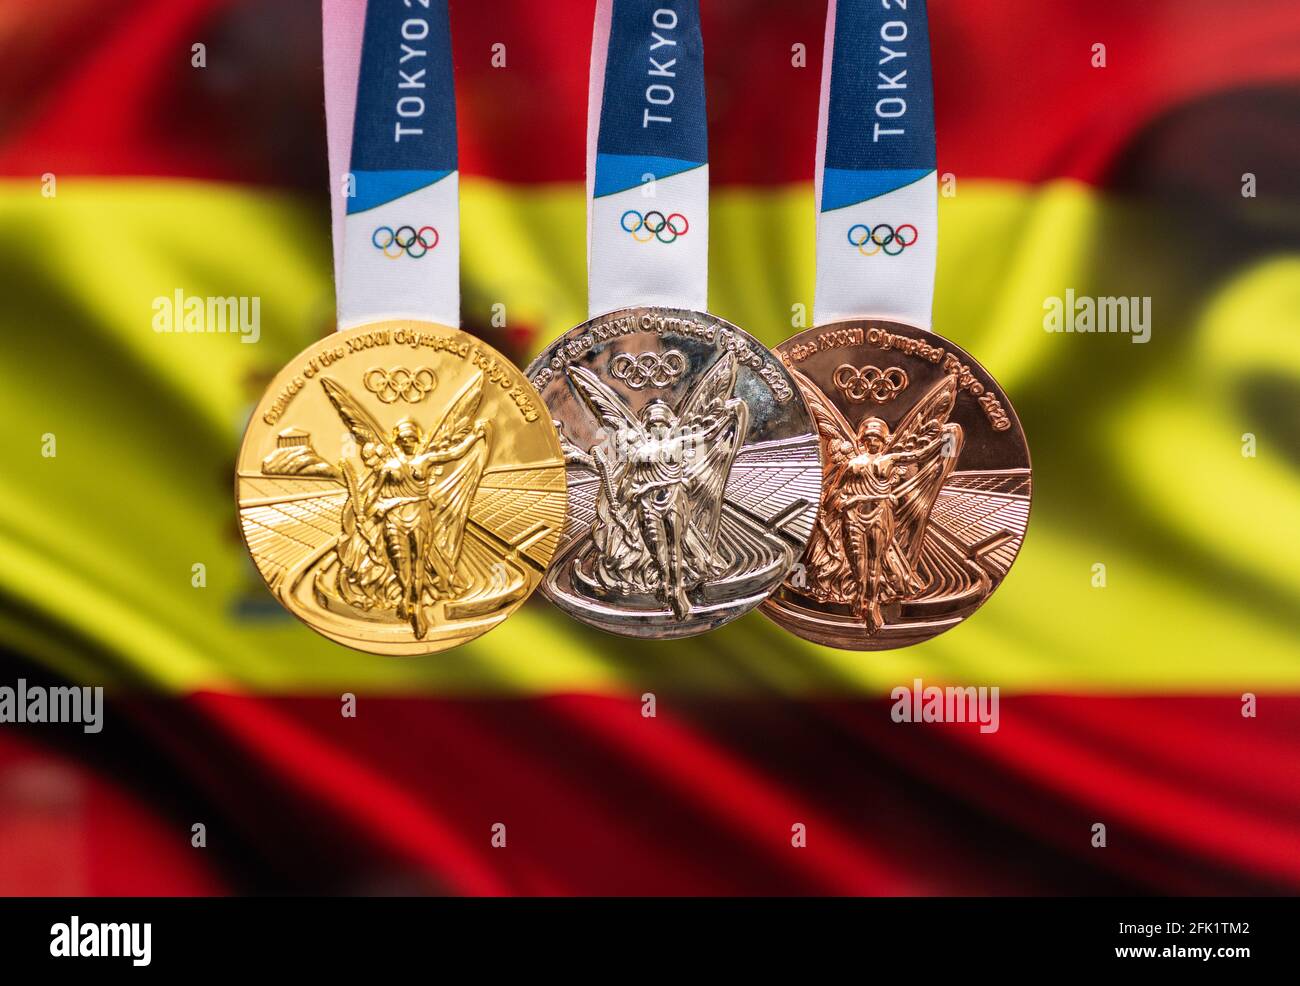 25 avril 2021 Tokyo, Japon. Médailles d'or, d'argent et de bronze des XXXII Jeux Olympiques d'été 2020 à Tokyo, sur fond de drapeau espagnol. Banque D'Images